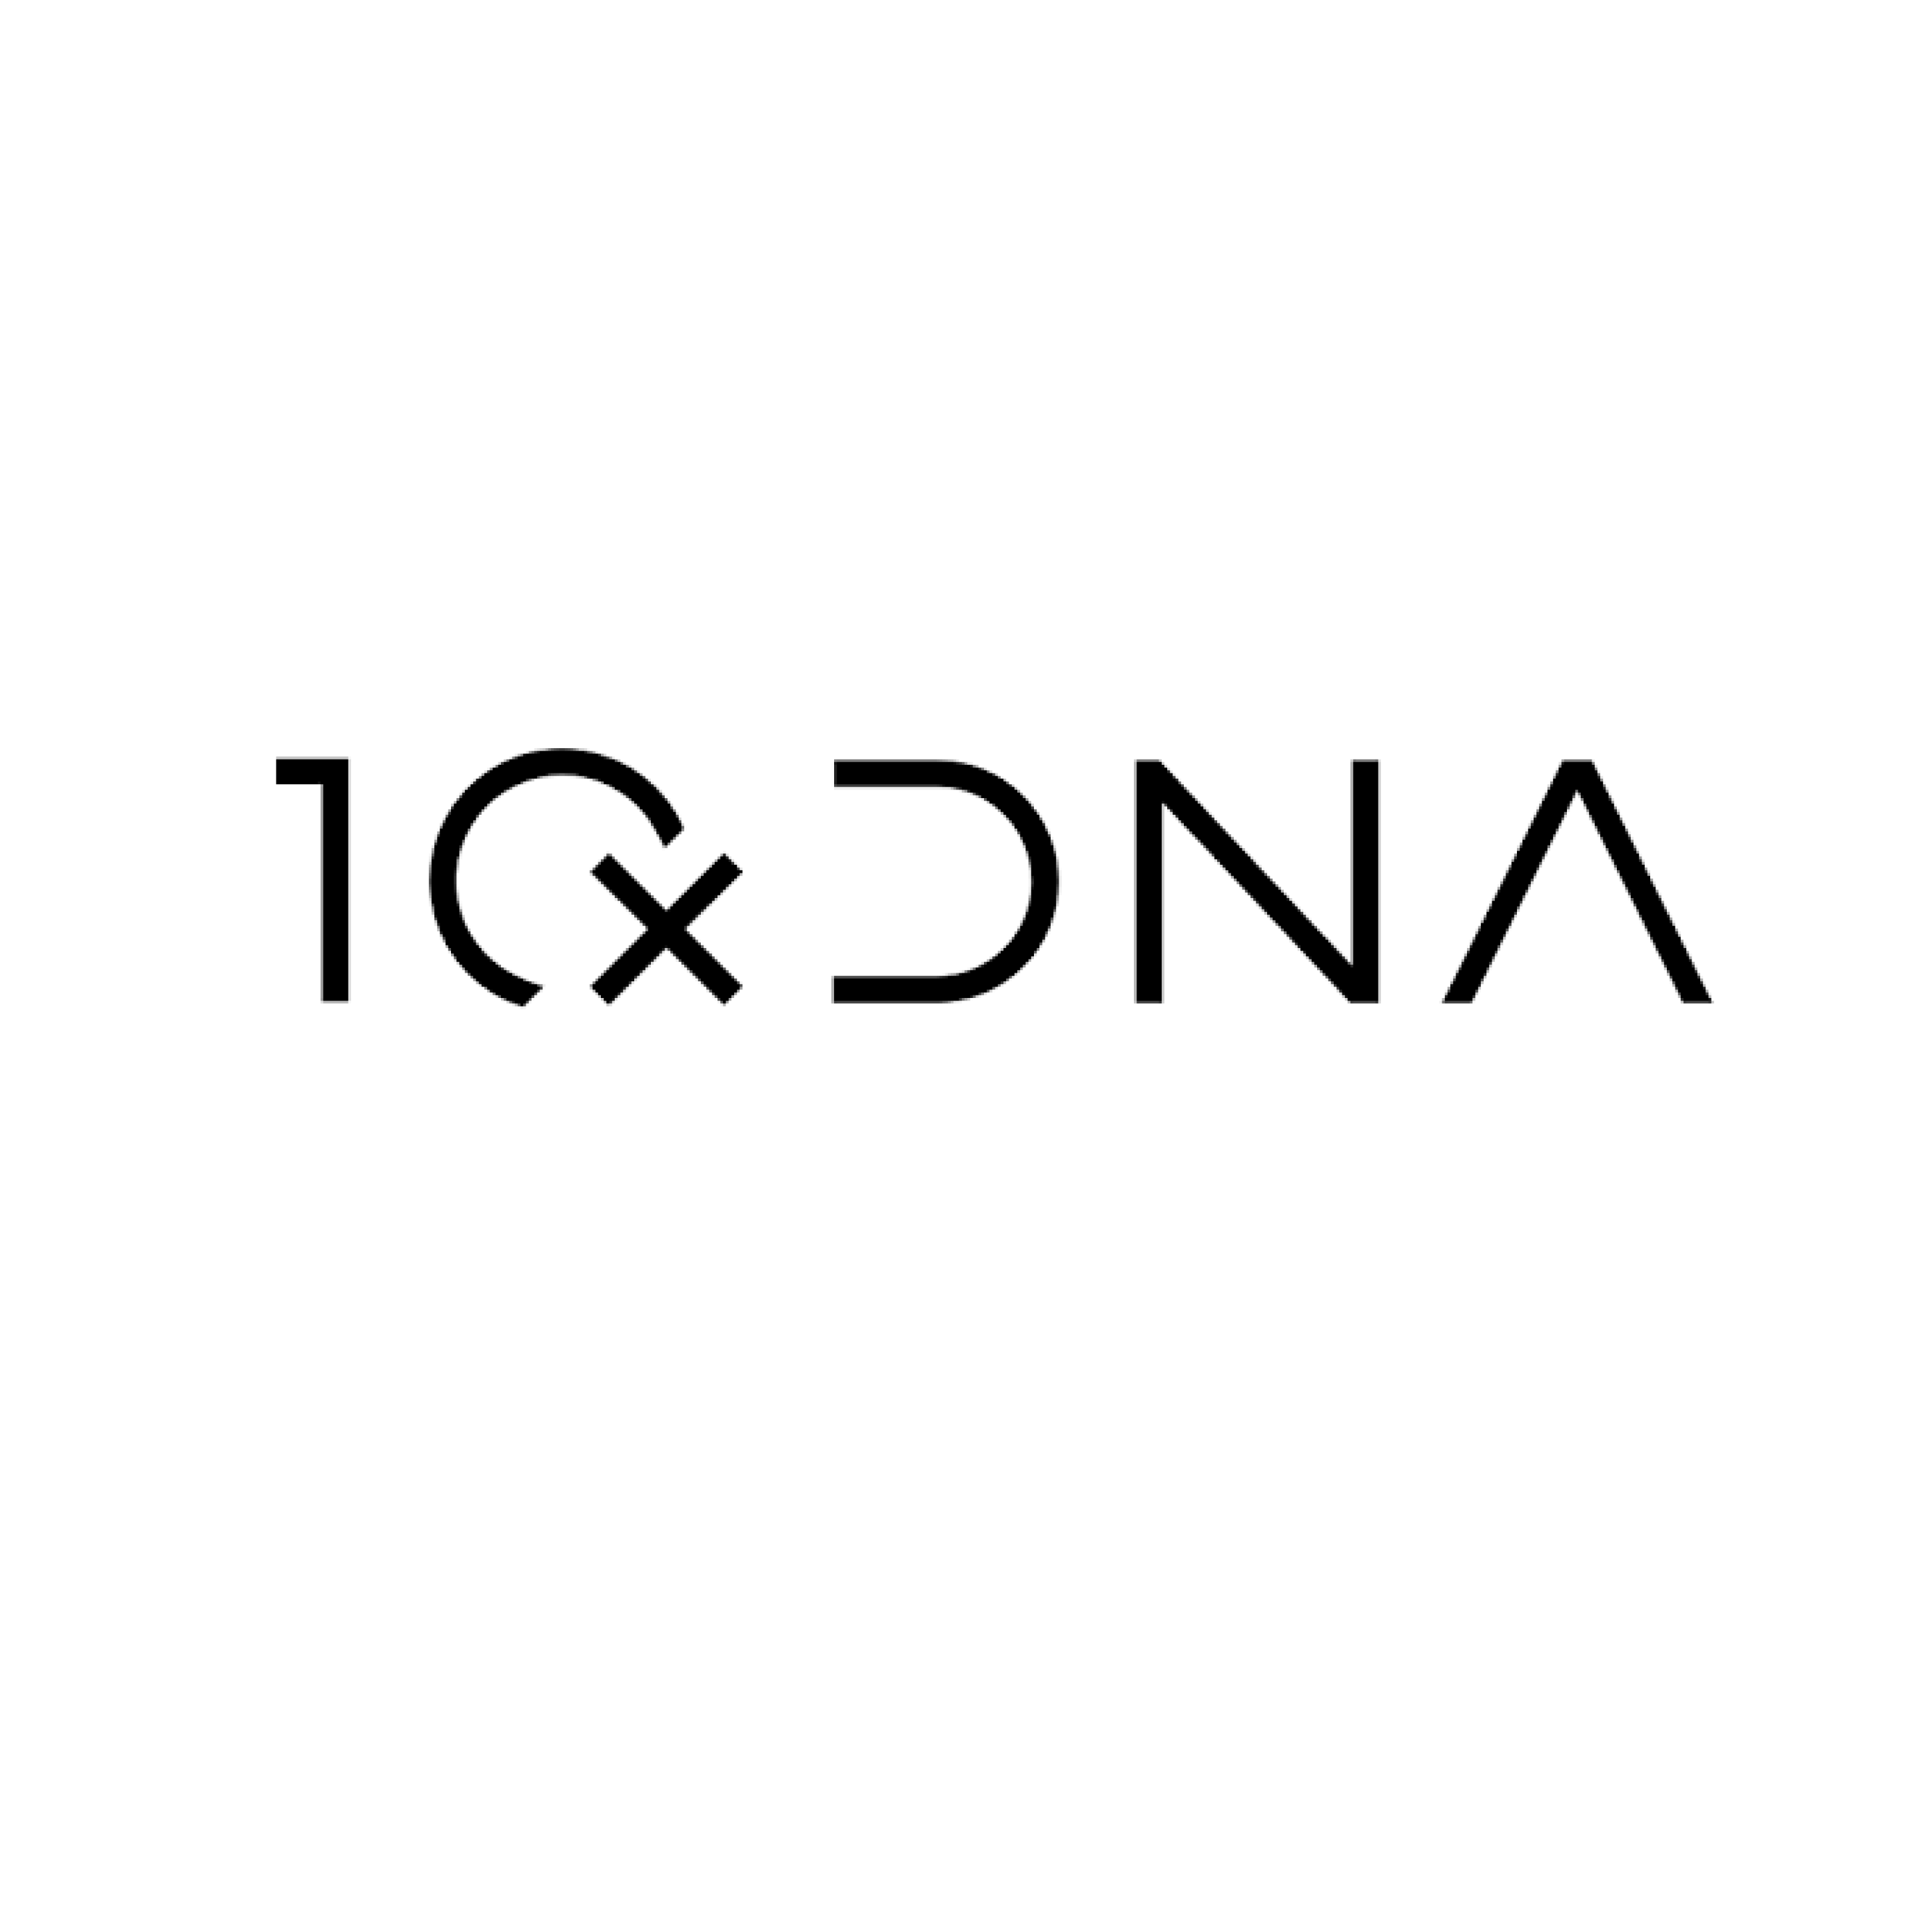 10xDNA